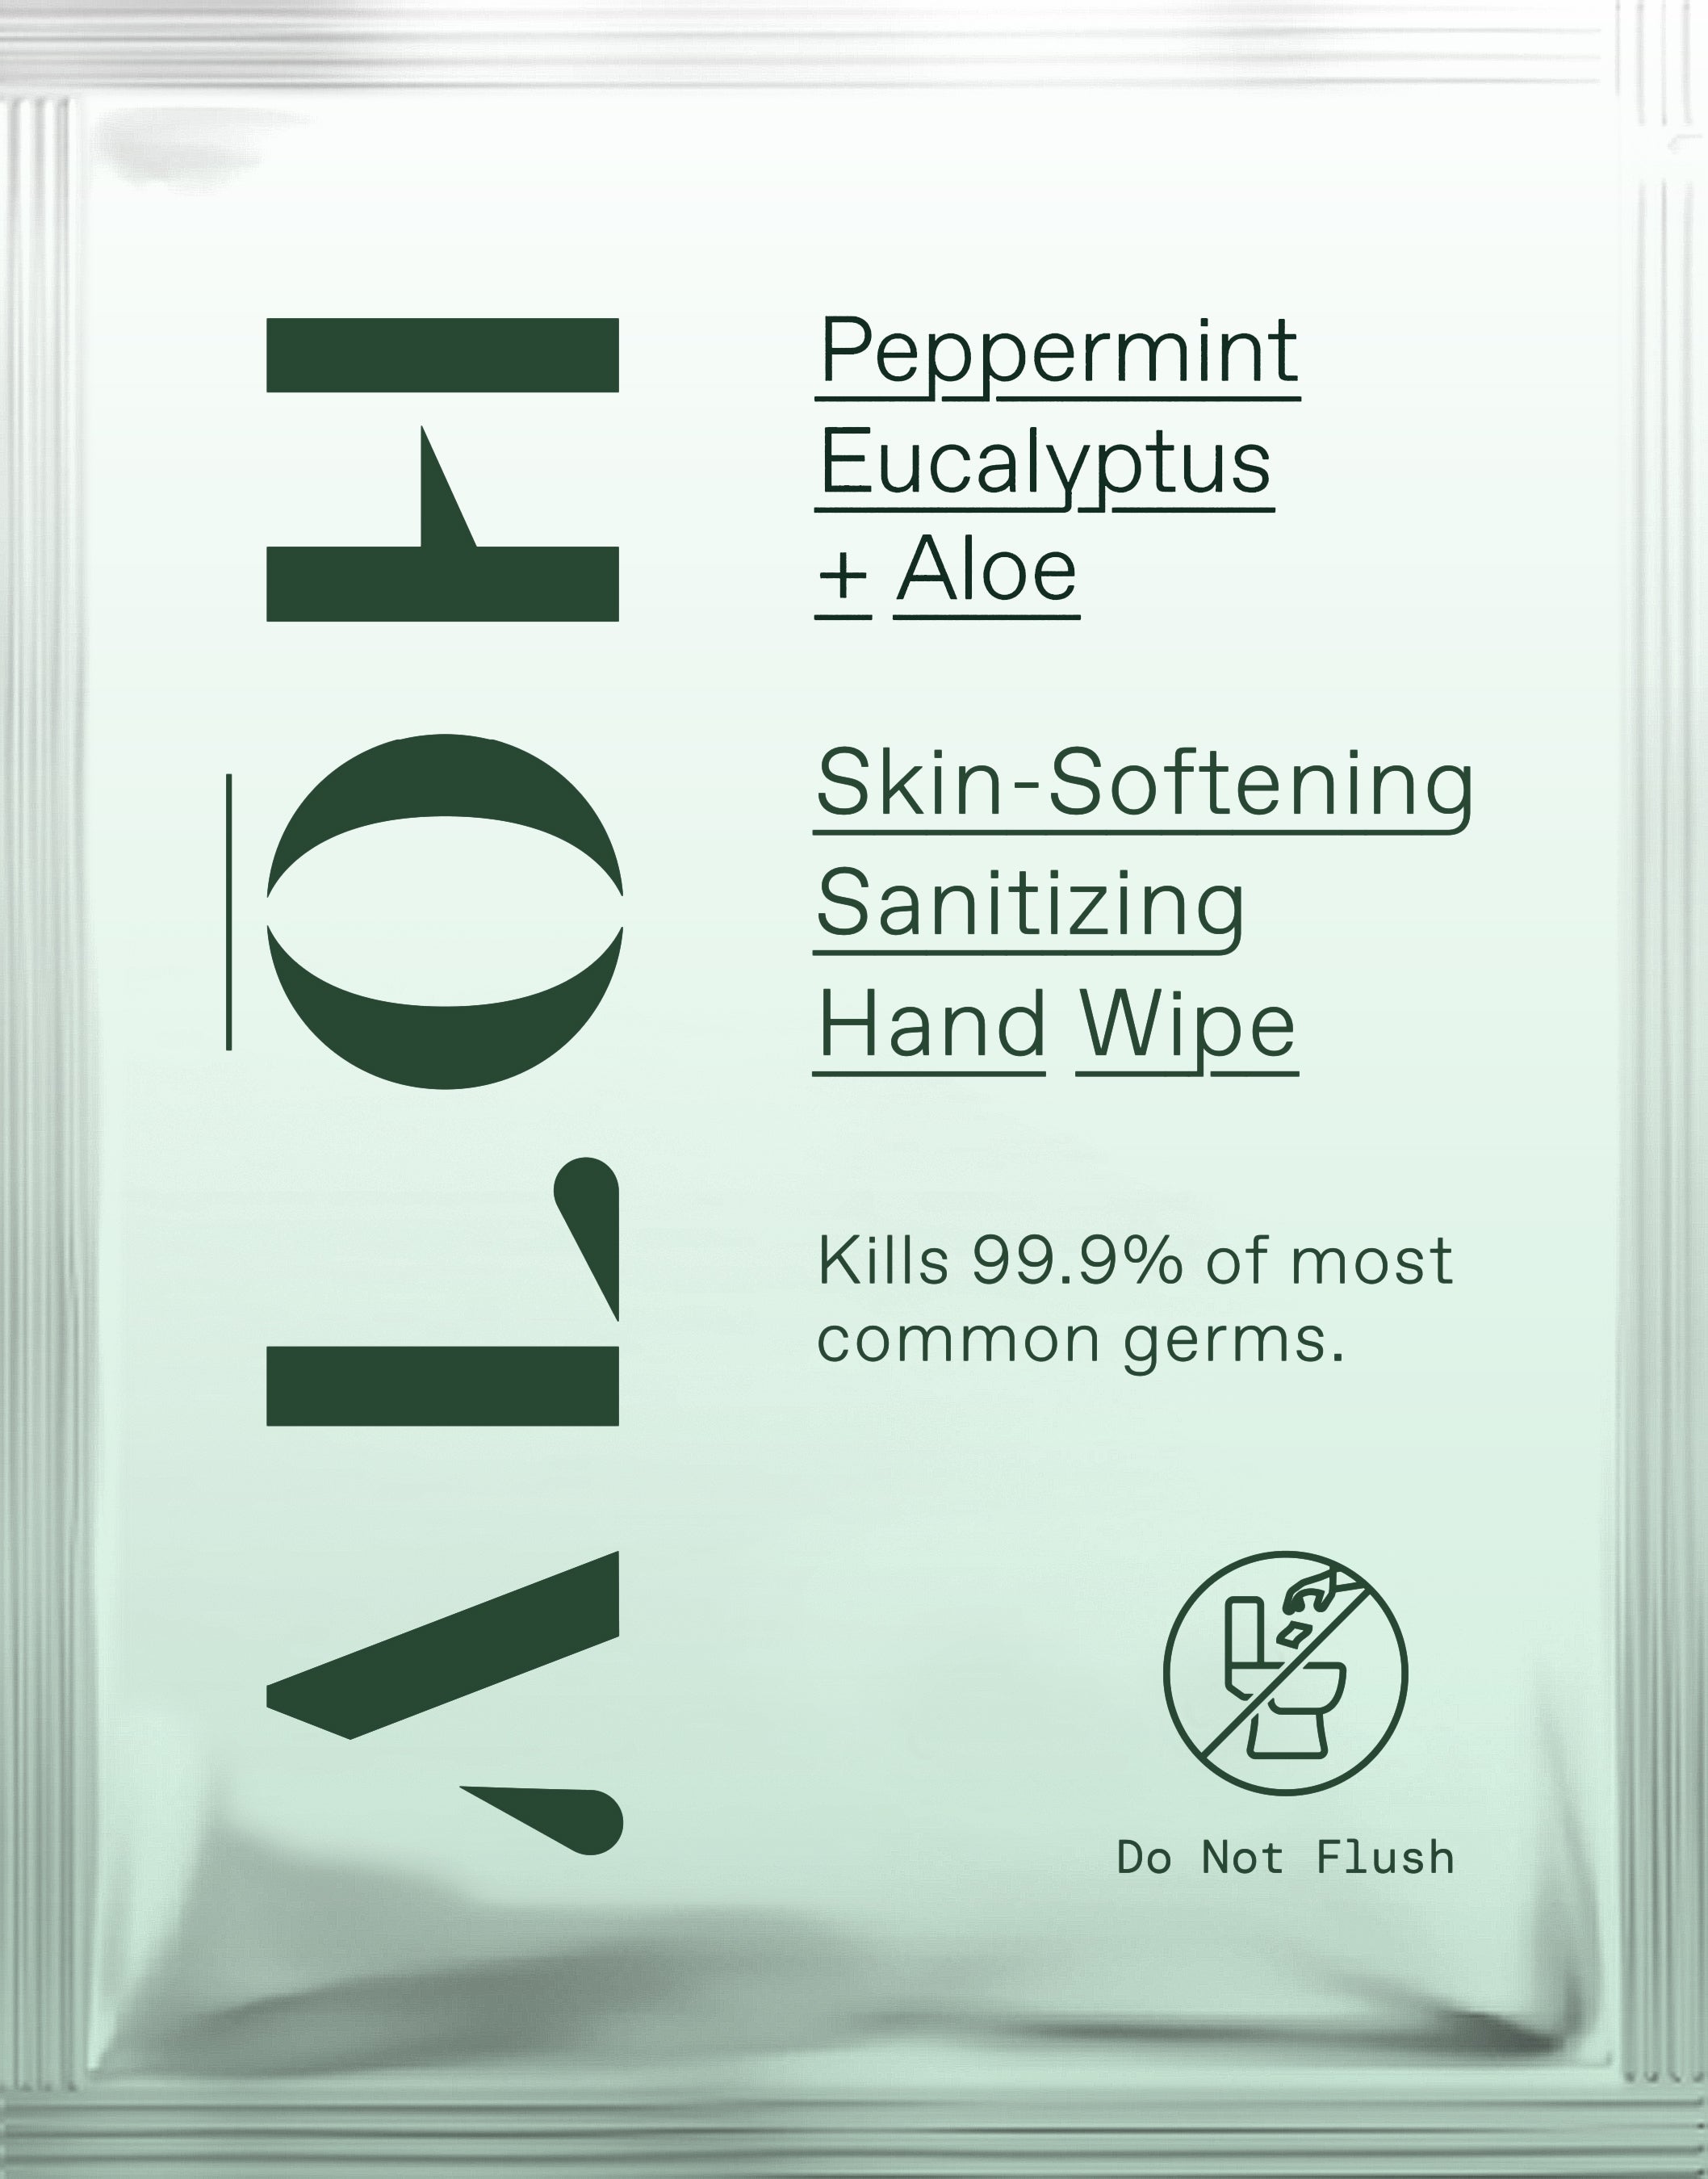 Moisturizing and Skin-Softening Hand Sanitizing Wipes